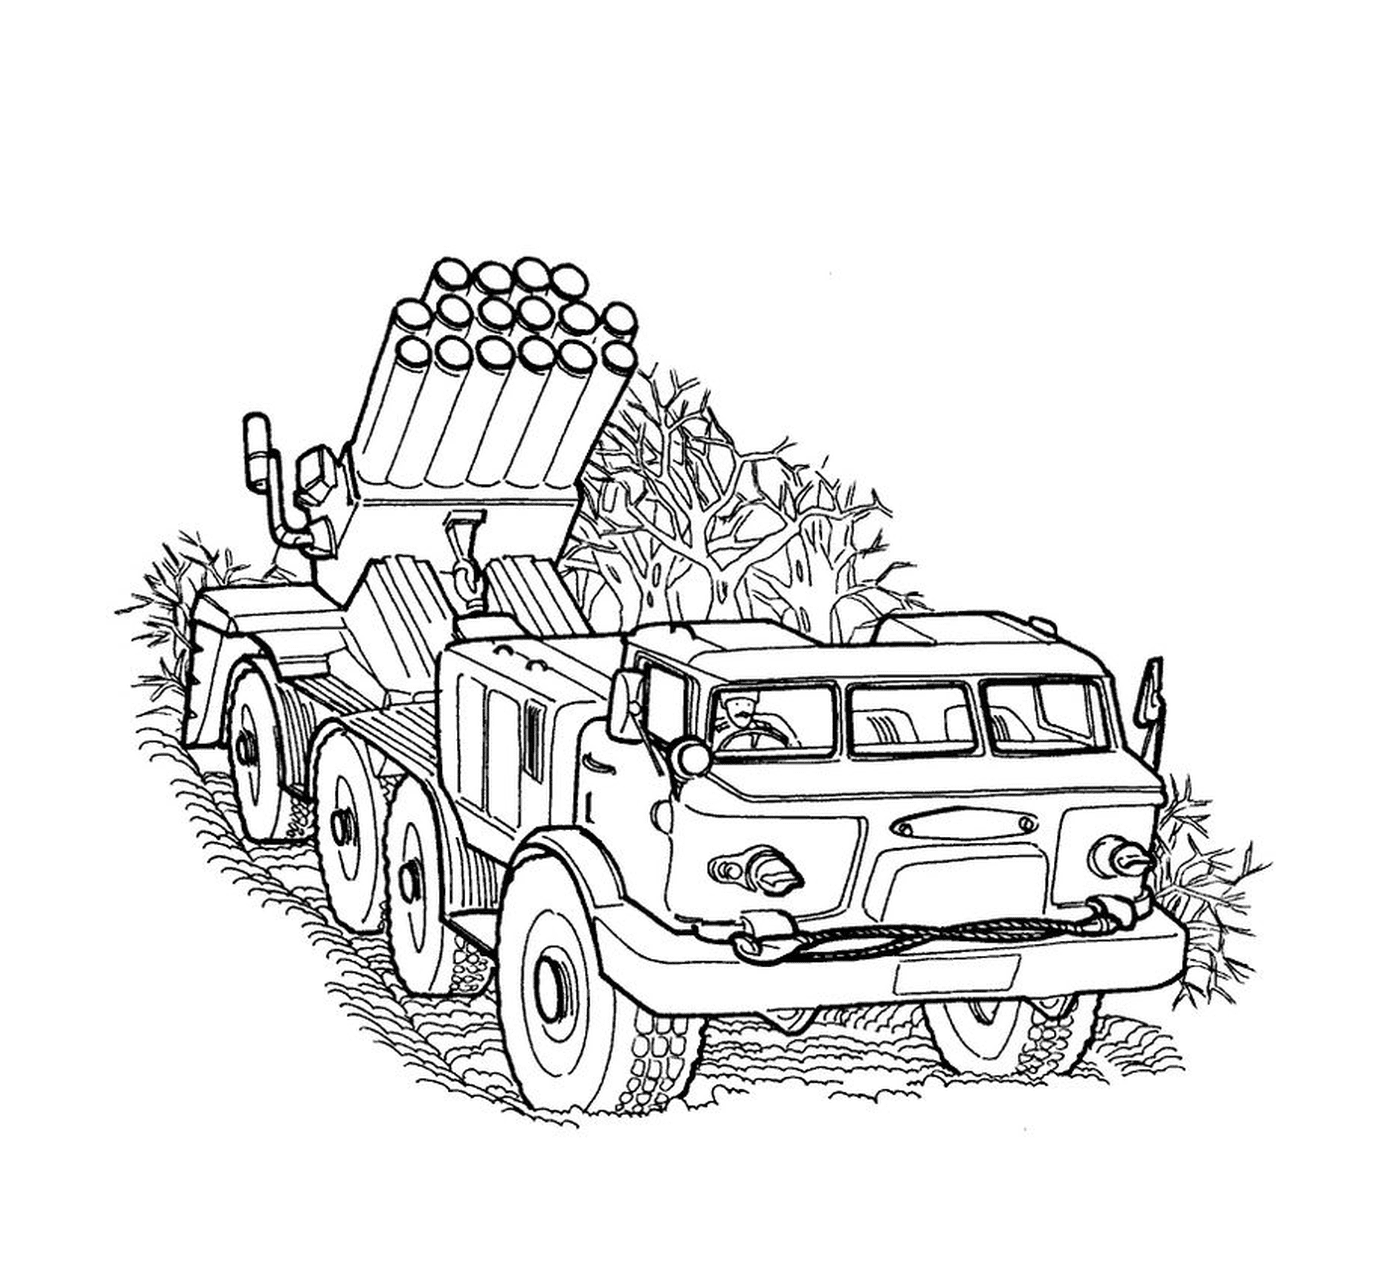  Veículo militar: um caminhão velho com um lançador de foguetes 